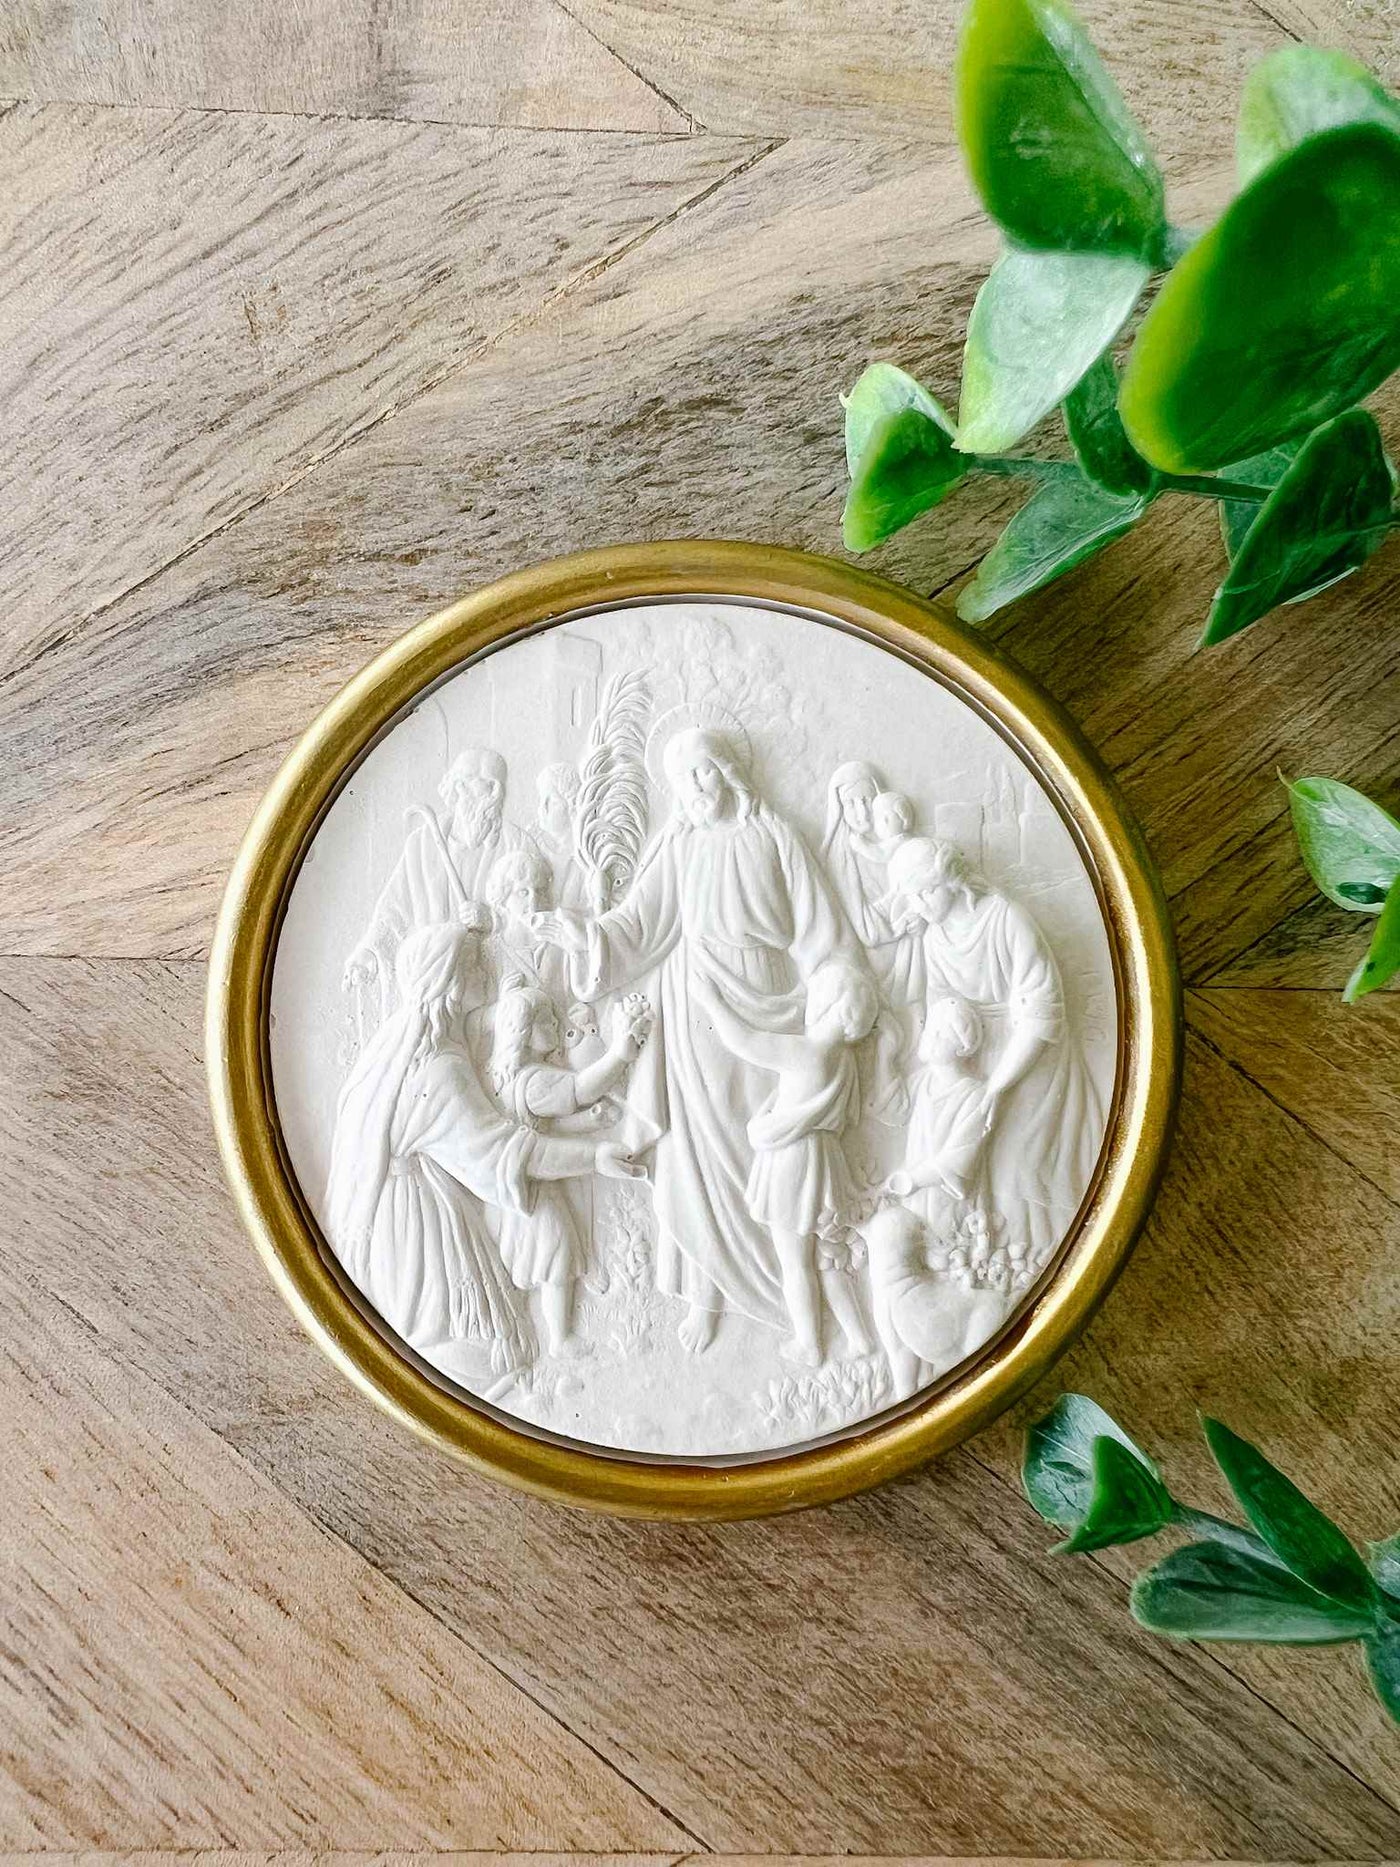 Jesus with Children Intaglio - Gold